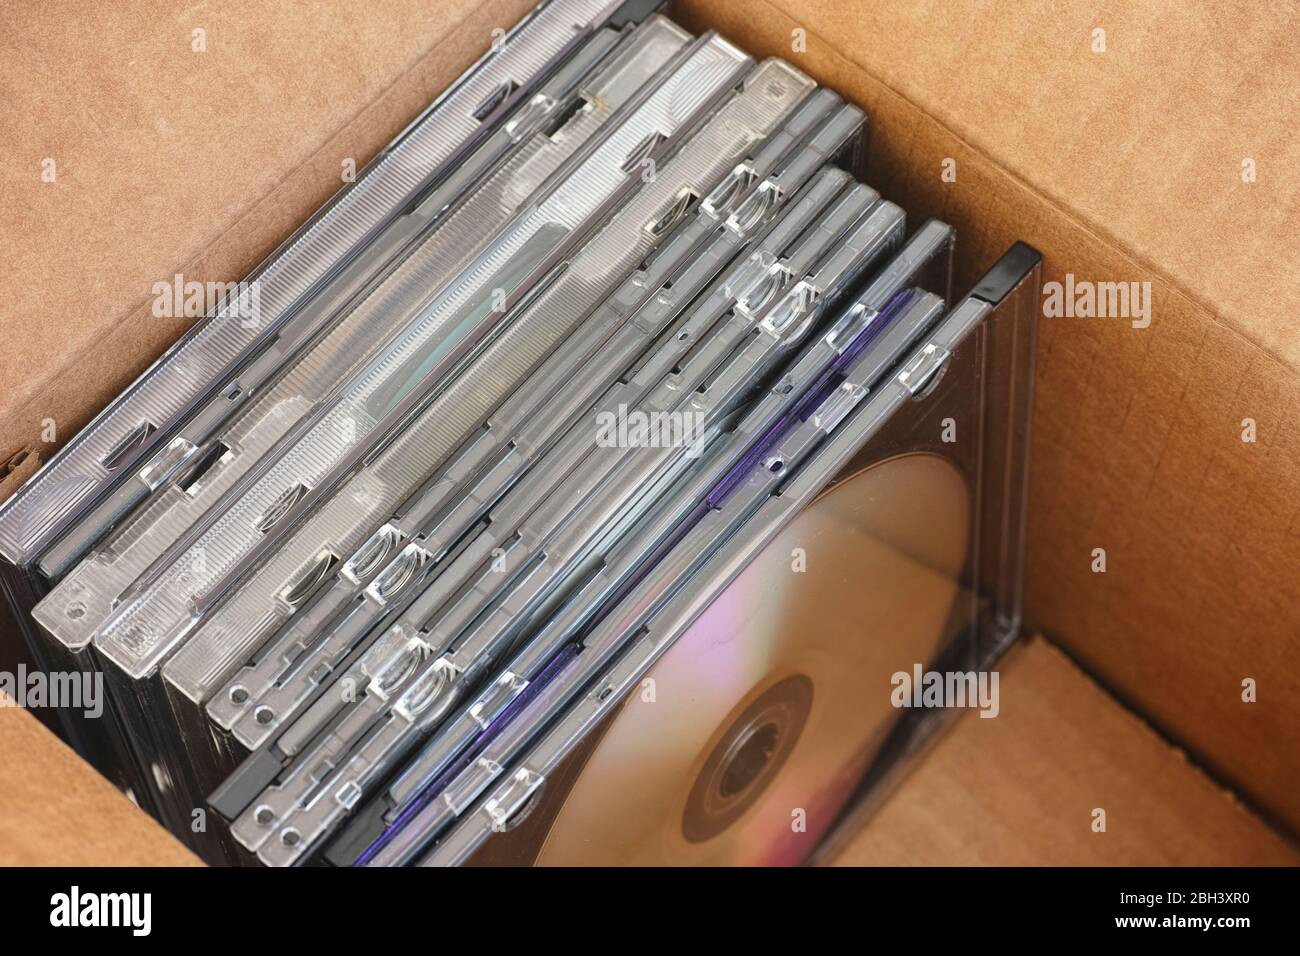 Ancienne collection de DVD ou de CD avec de la poussière sur eux à  l'intérieur d'une boîte en carton. Gros plan Photo Stock - Alamy